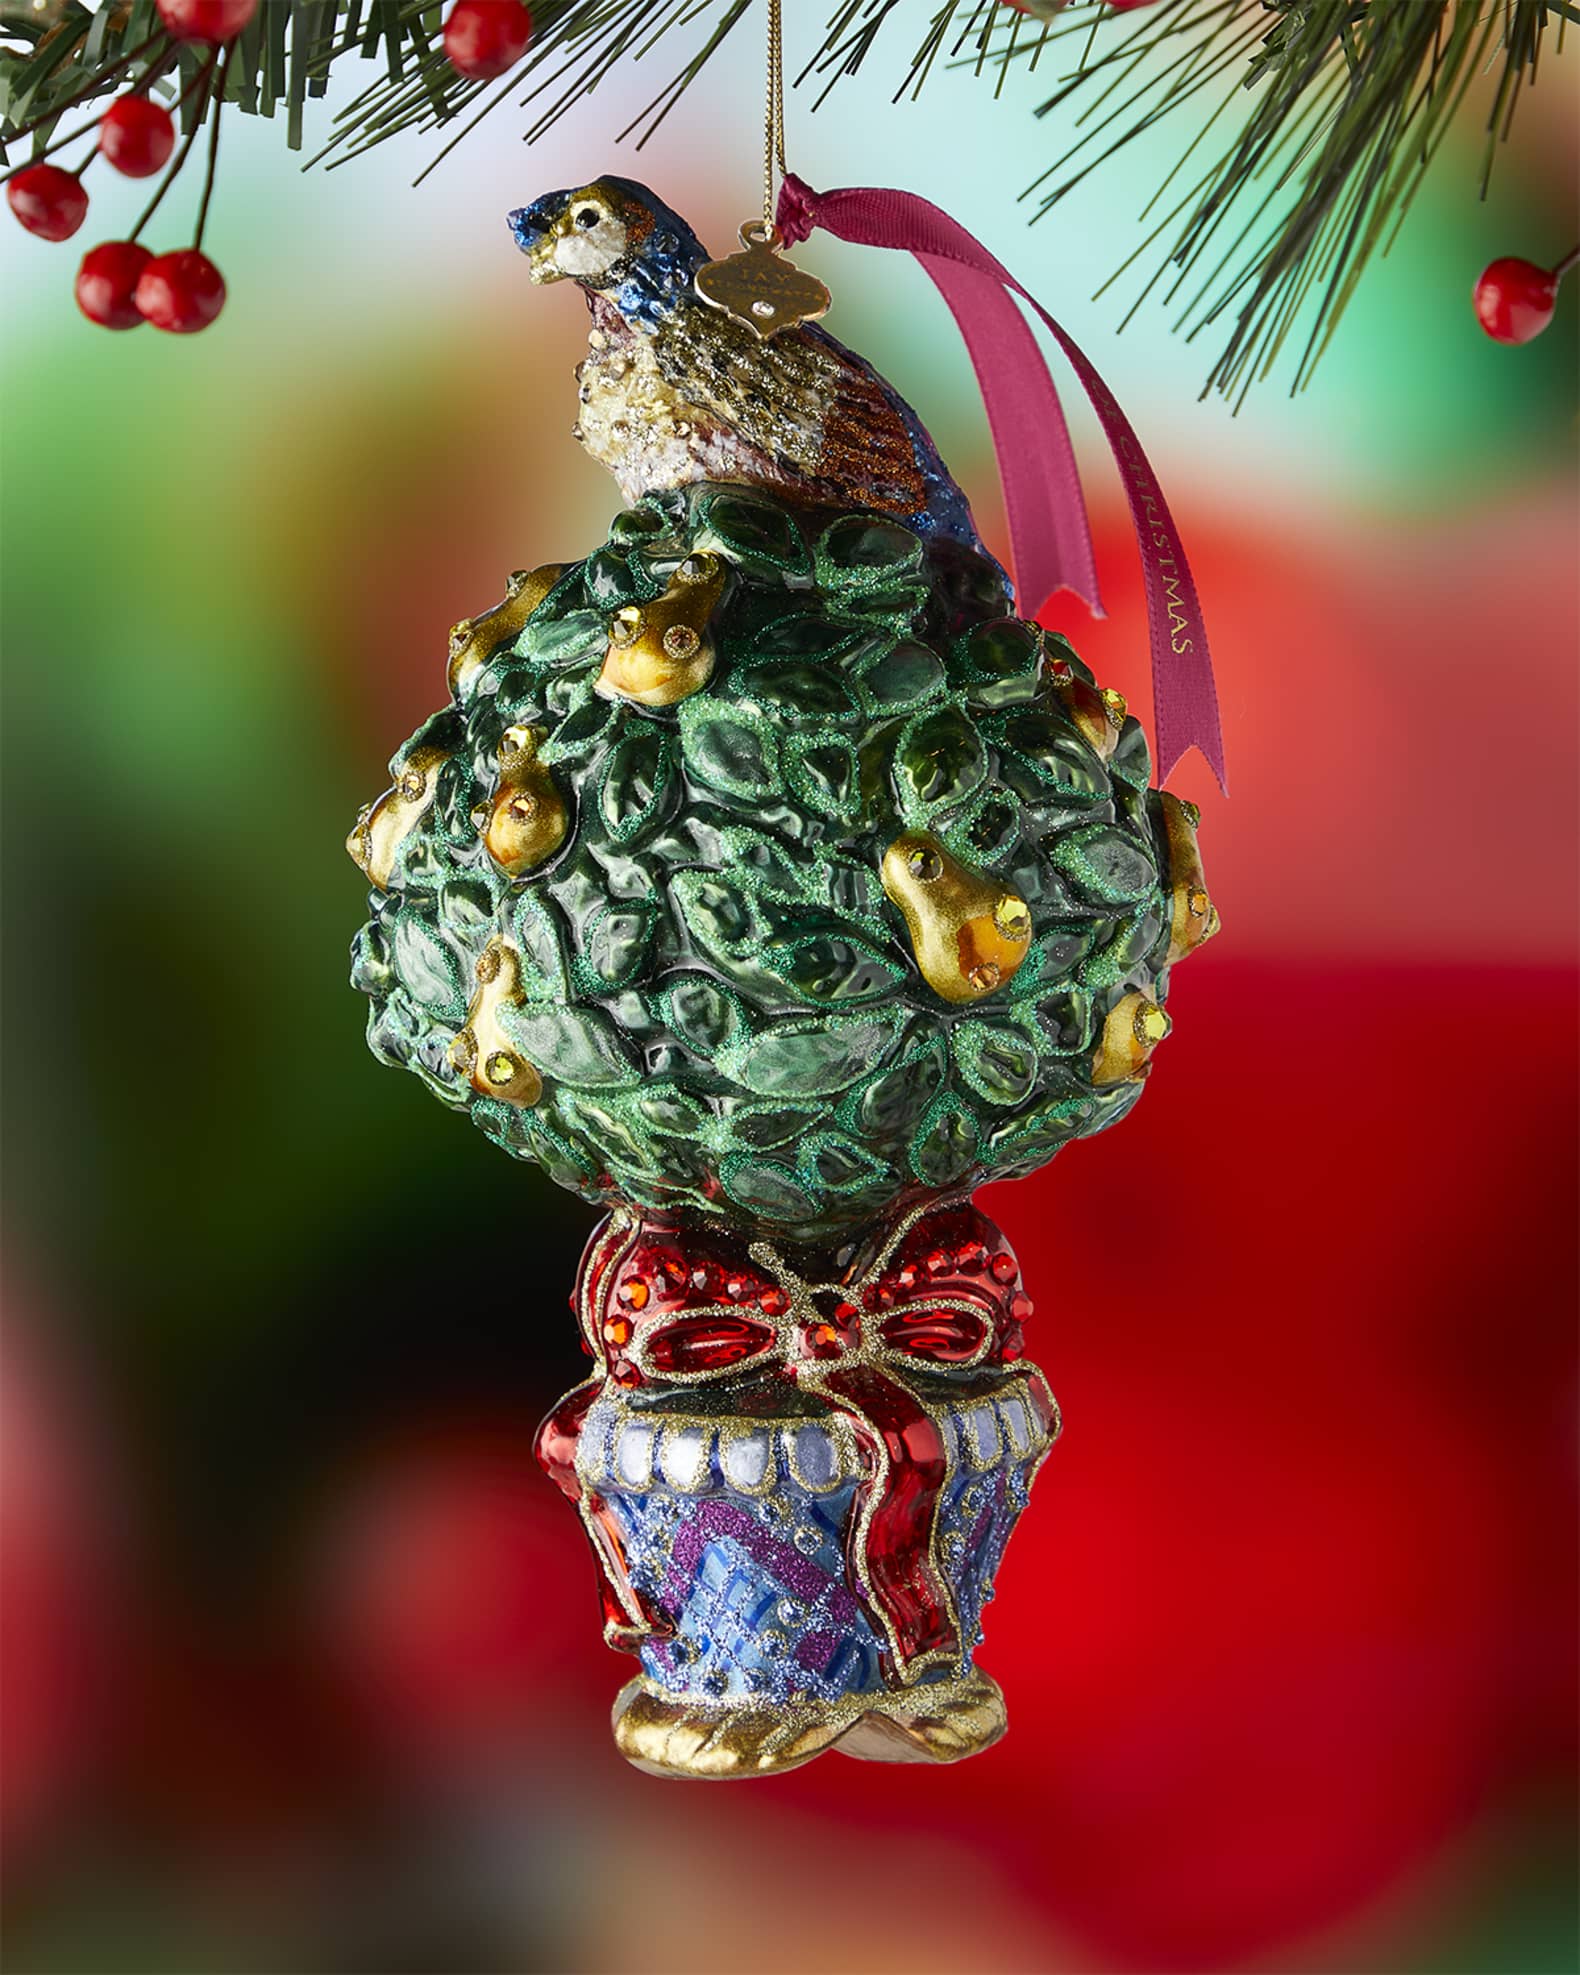 Louis Vuitton Monogram Christmas Ornaments